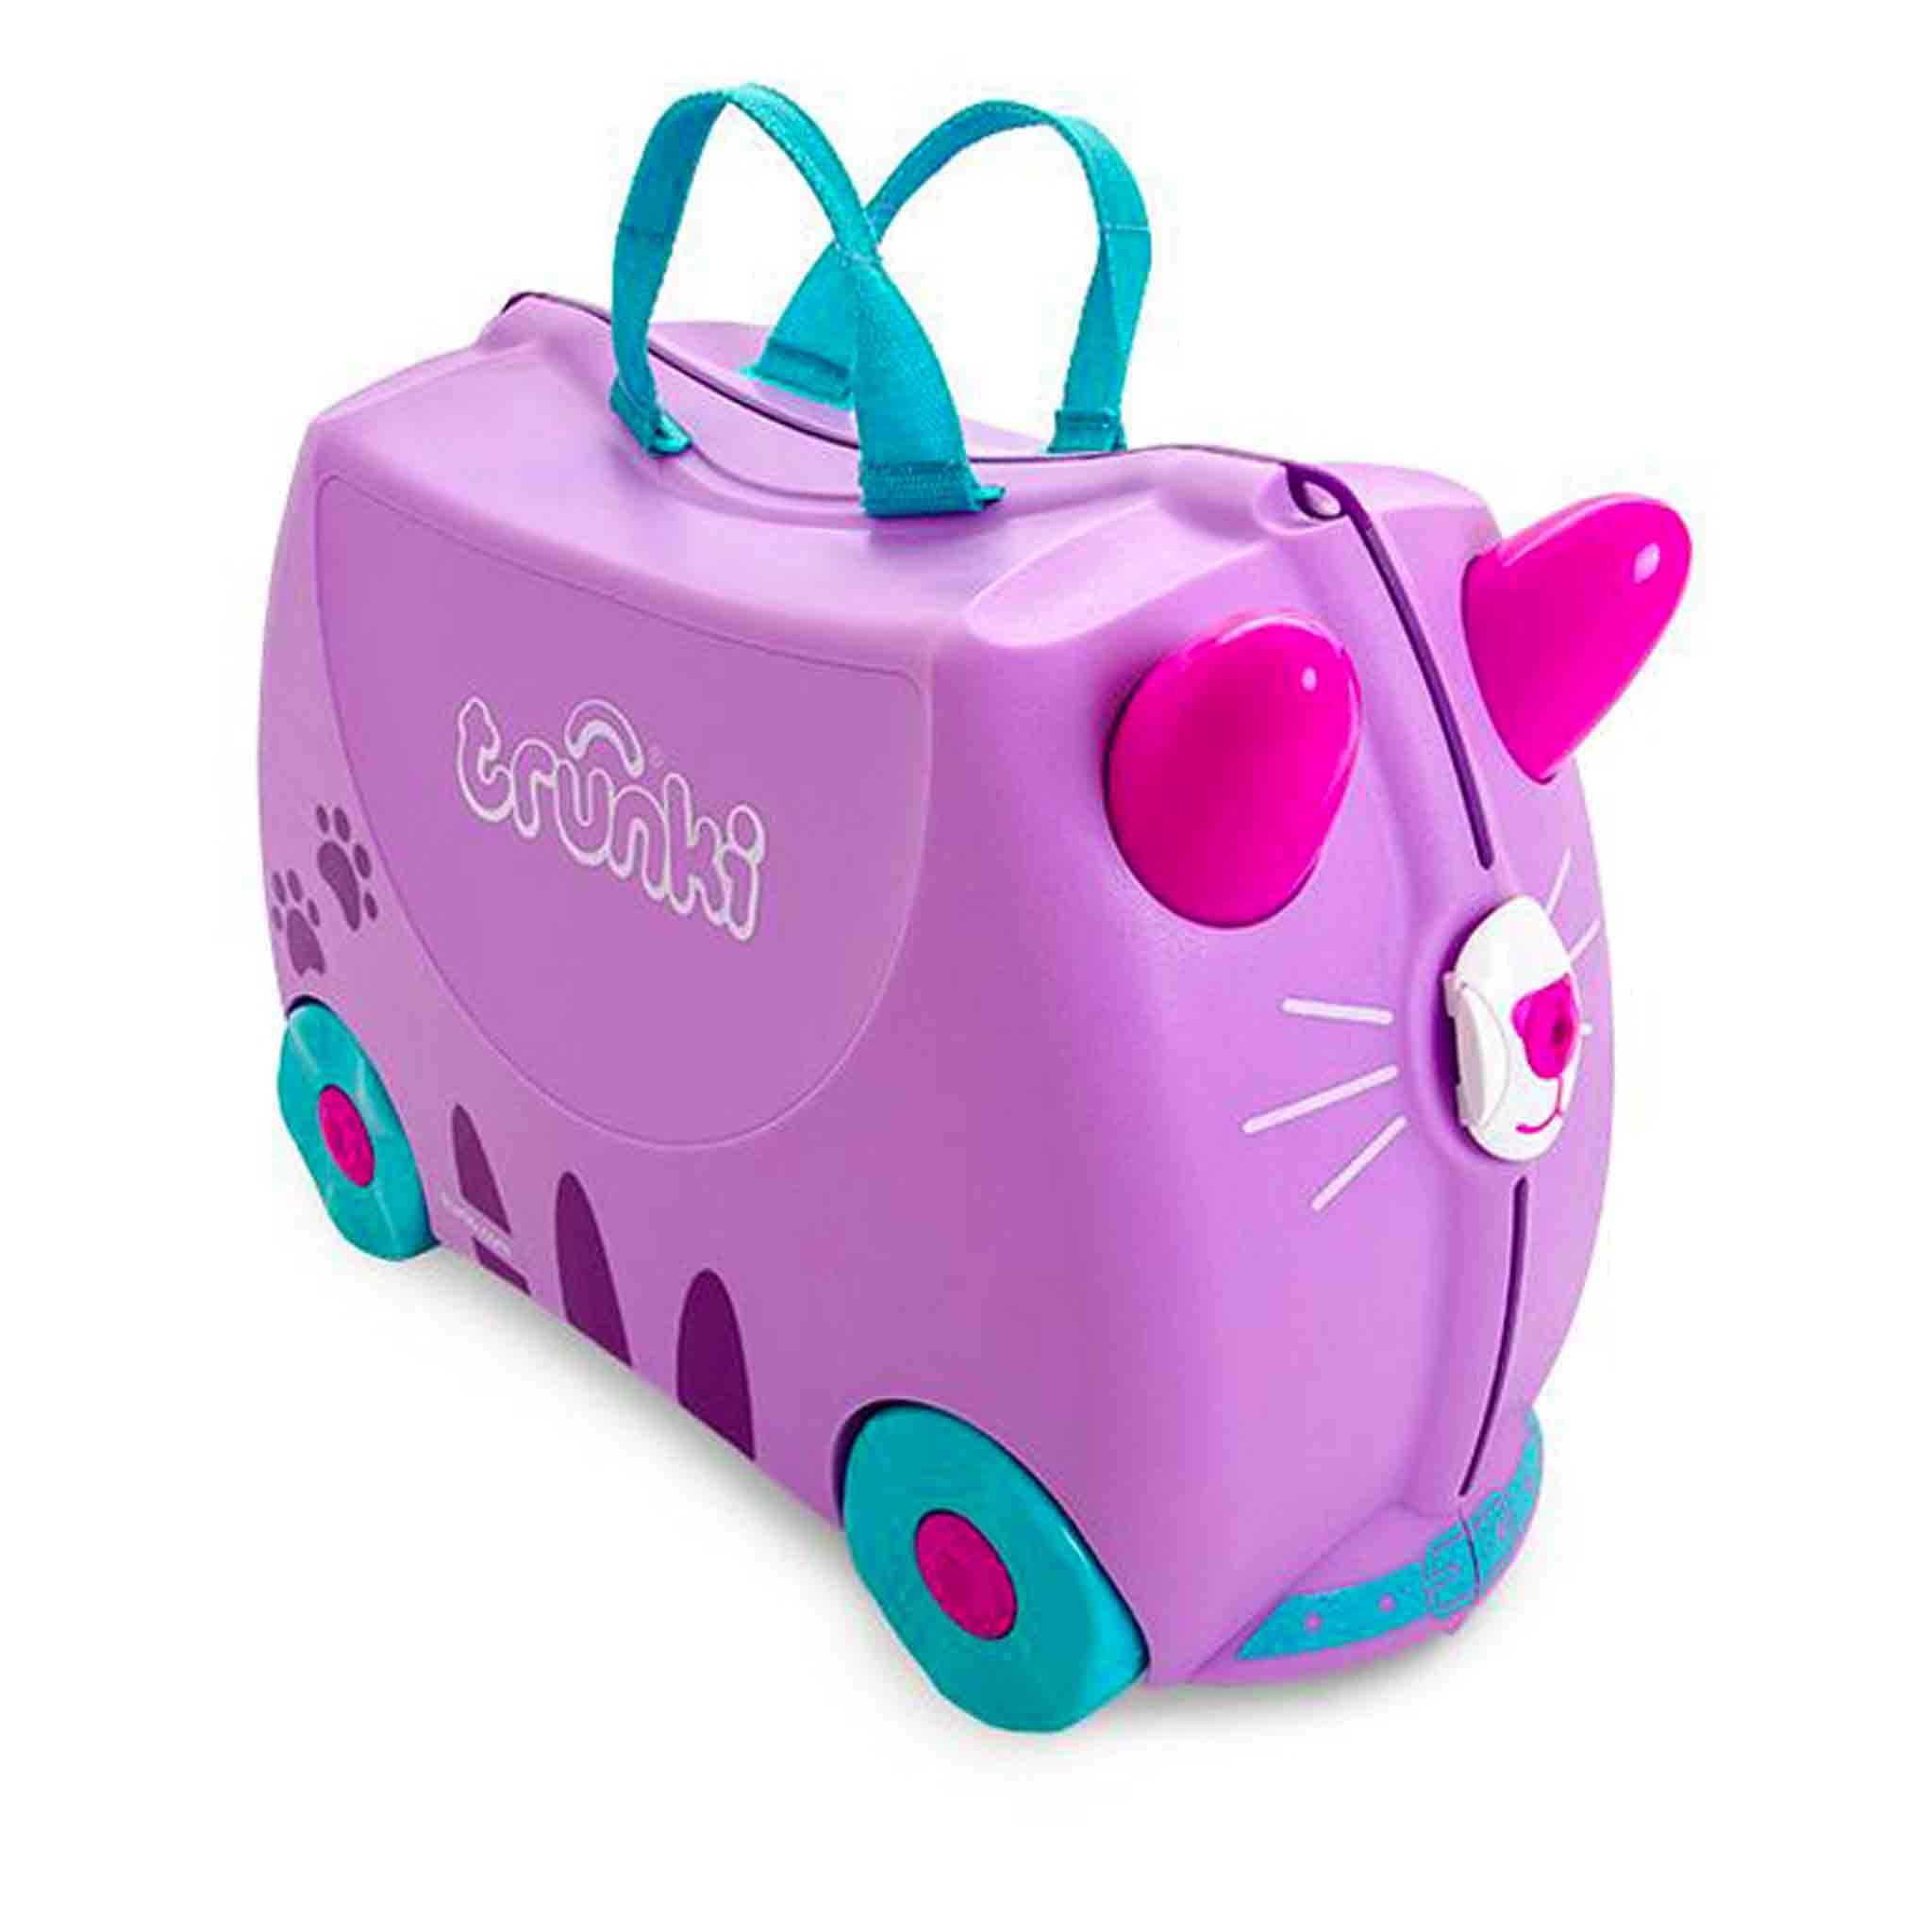 TR0322-GB-trunki-valigetta-cavalcabile-traino-bambini-viaggiare-colorata-cassie.jpg